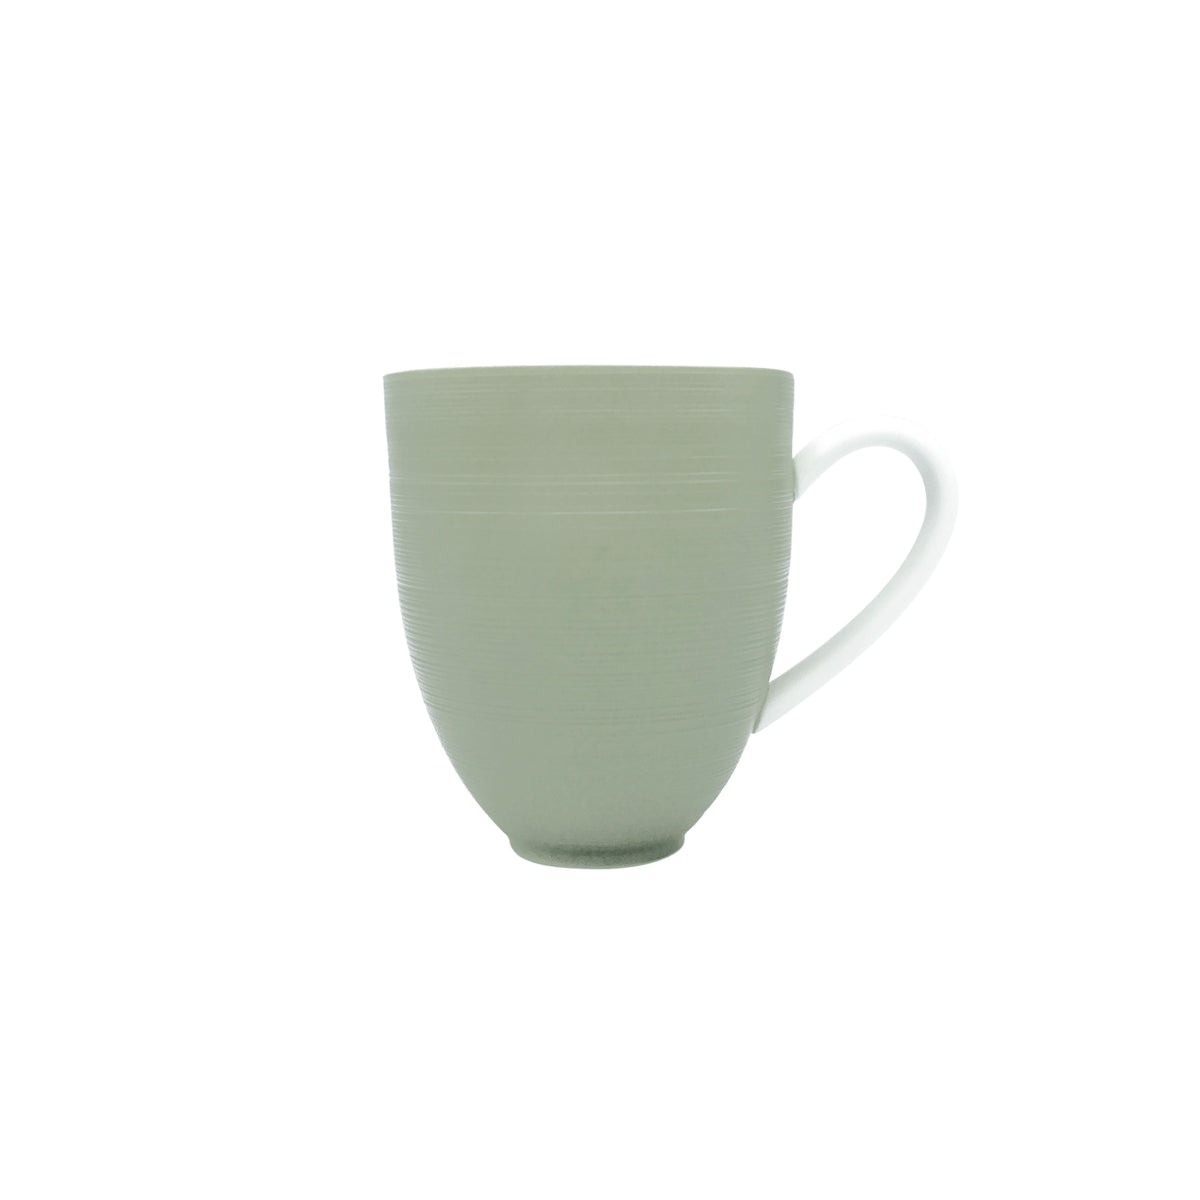 HEMISPHERE Kaki-green Mug